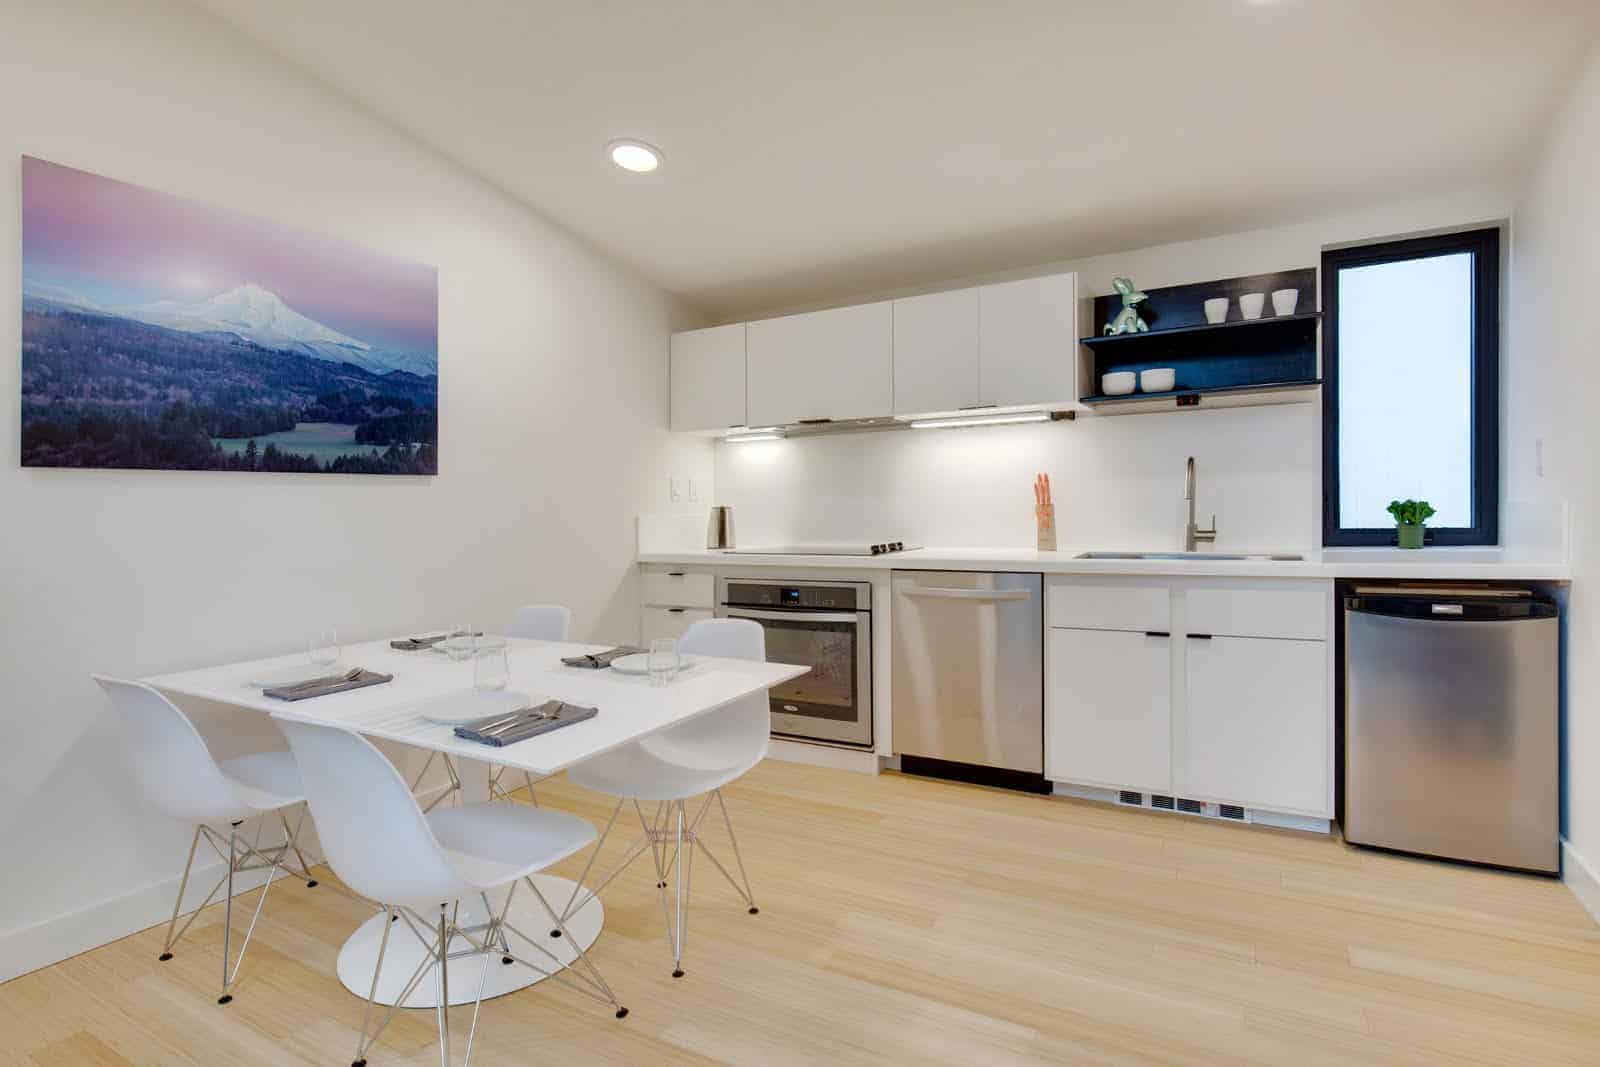 NODE Trilium modern prefab home interior - dining and kitchen.